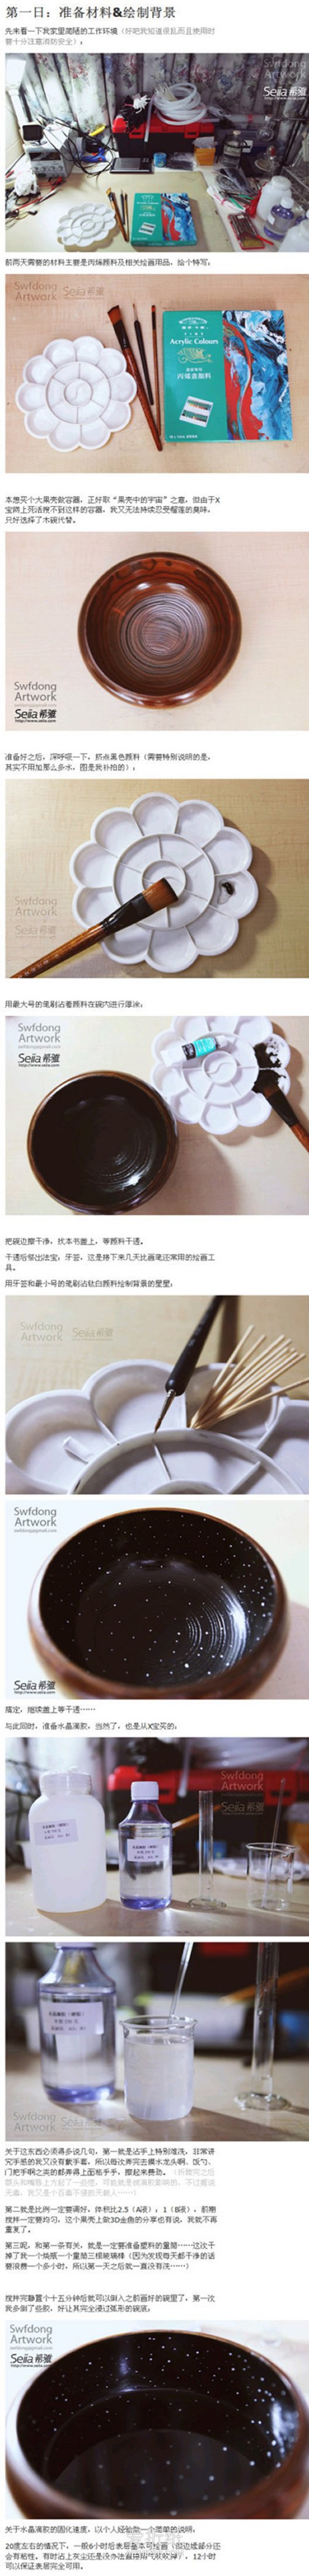 怎么用木碗做星空碗创意礼物的方法图解- www.aizhezhi.com